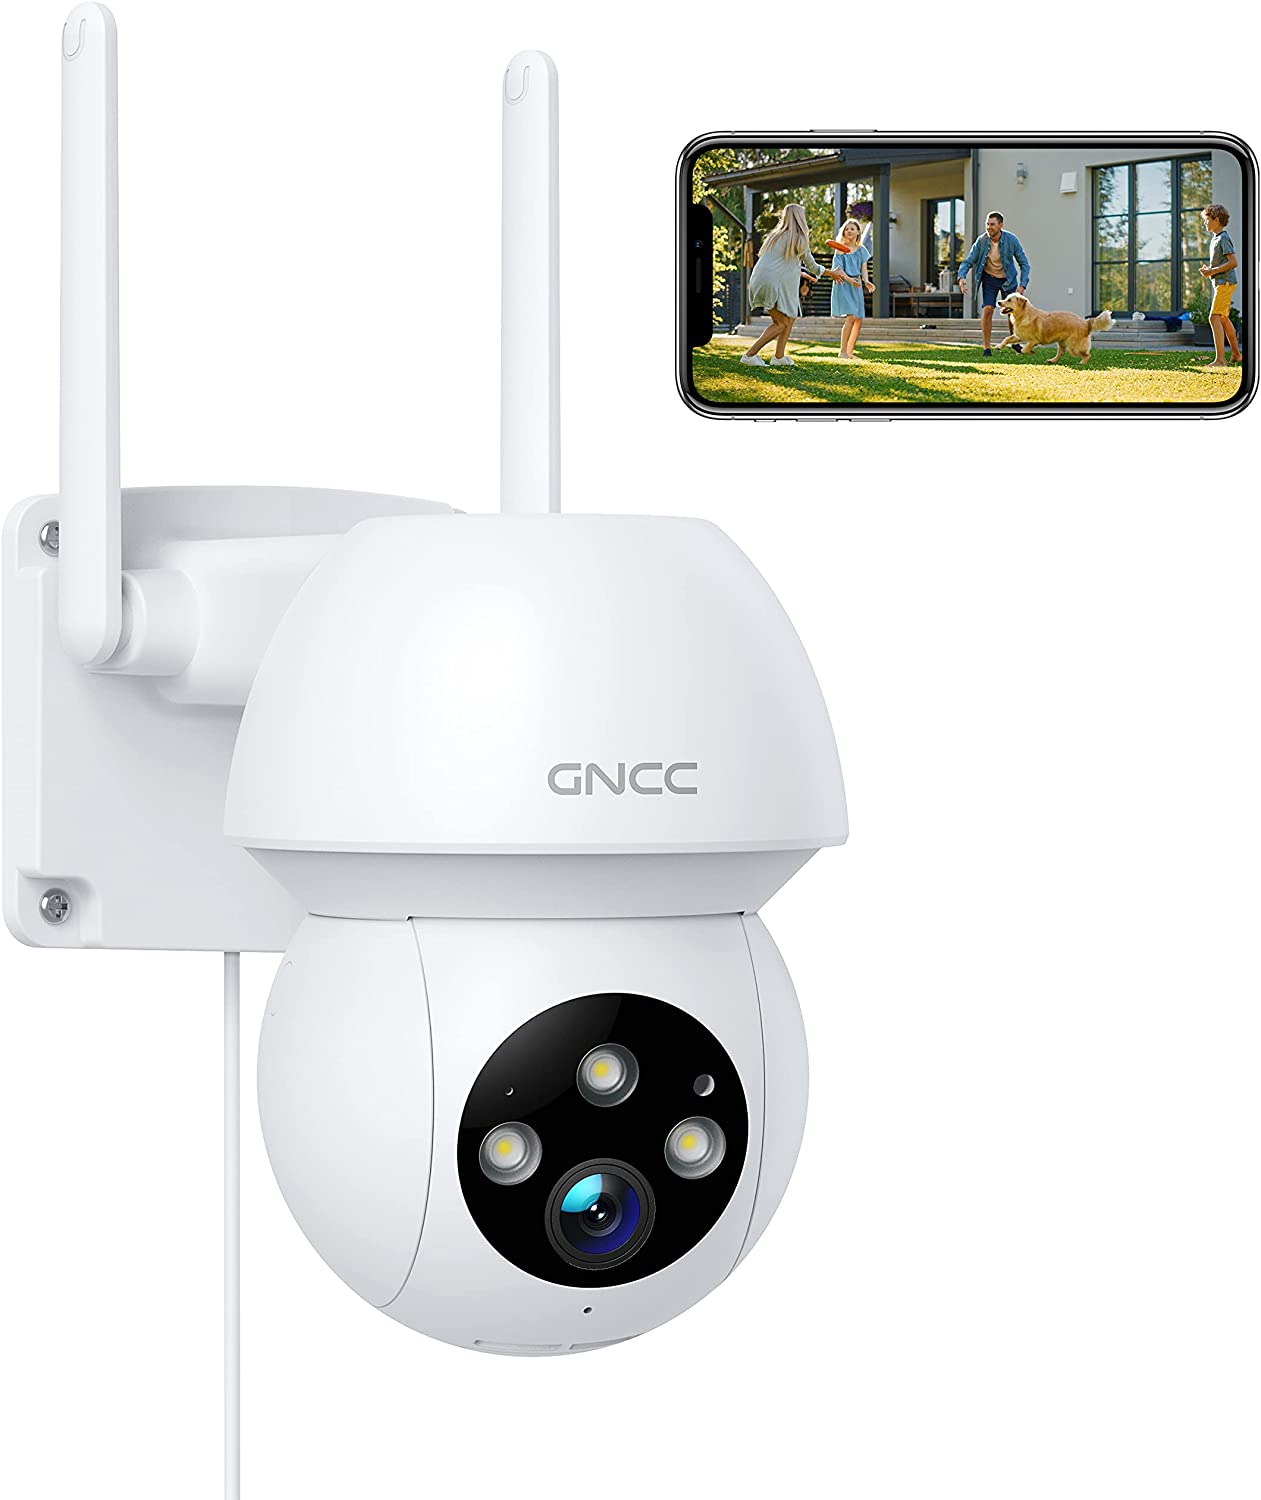 Bild zu GNCC WLAN Outdoor Überwachungskamera mit Bewegungserkennung und Nachtsicht für 39,99€